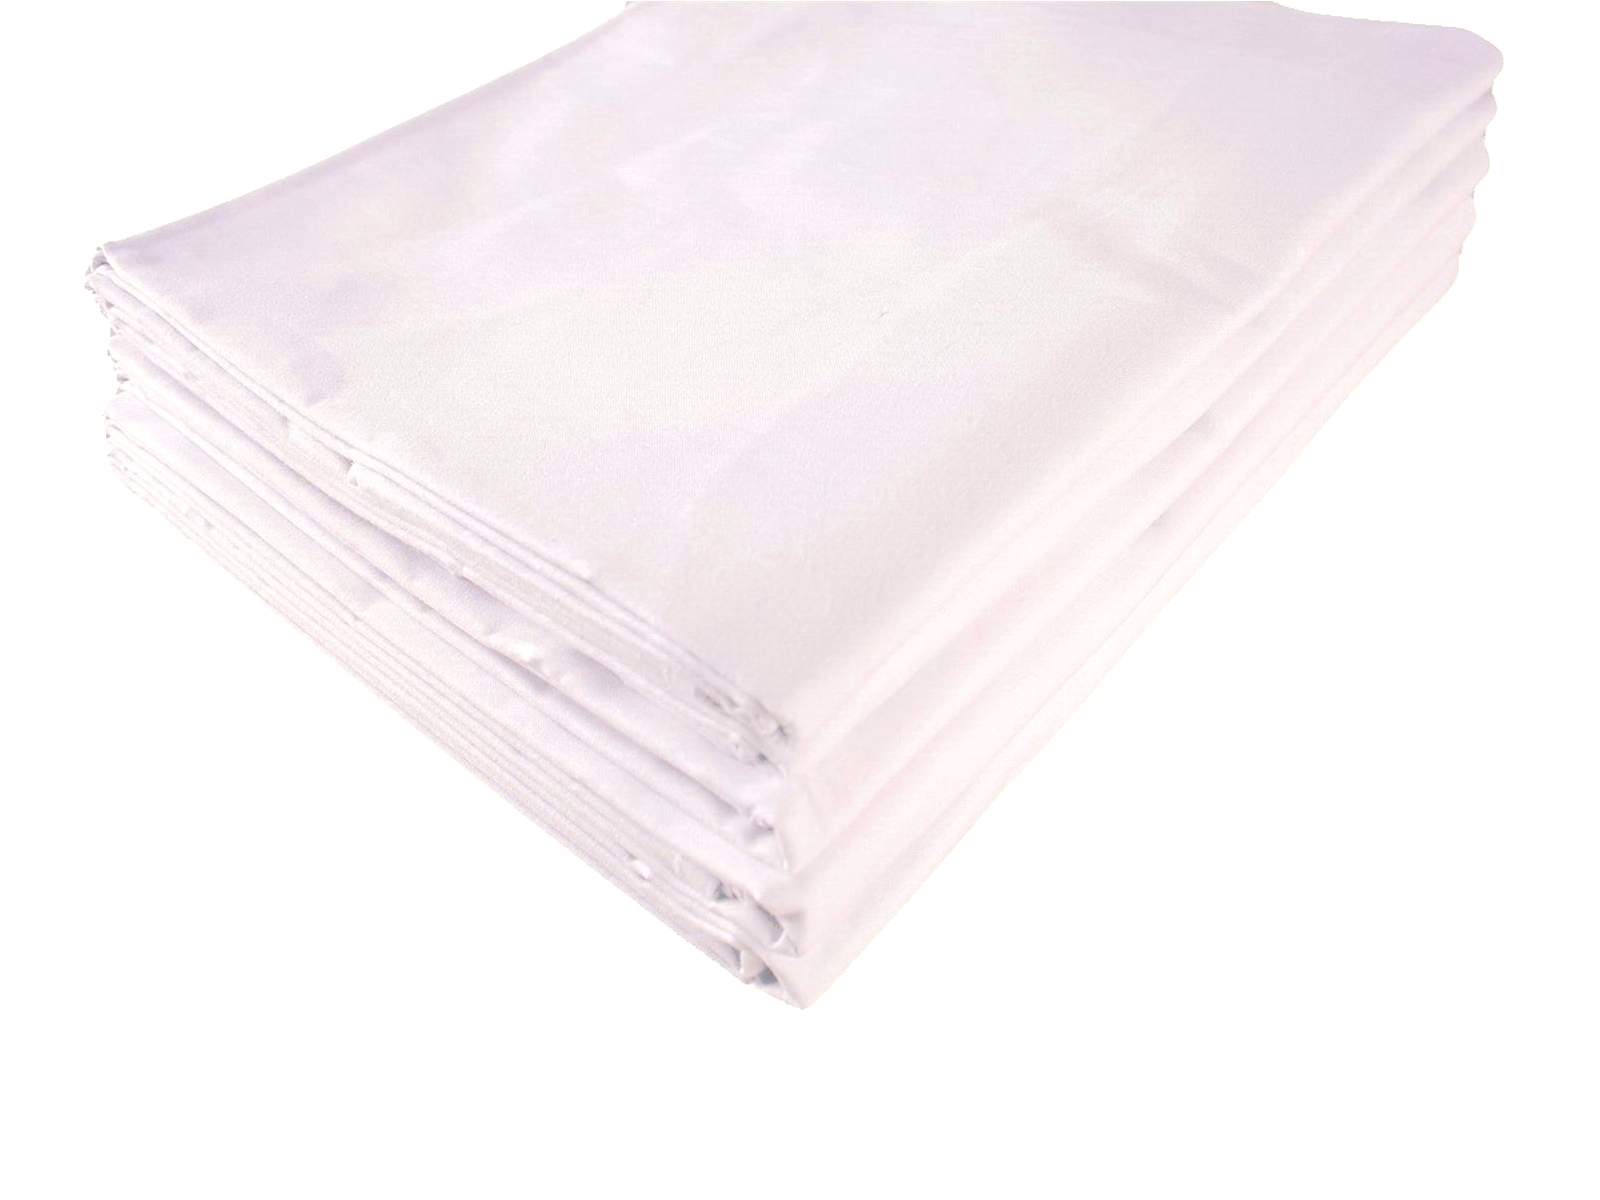 Bettlaken 150x250 cm Weiß Baumwolle 2er Pack